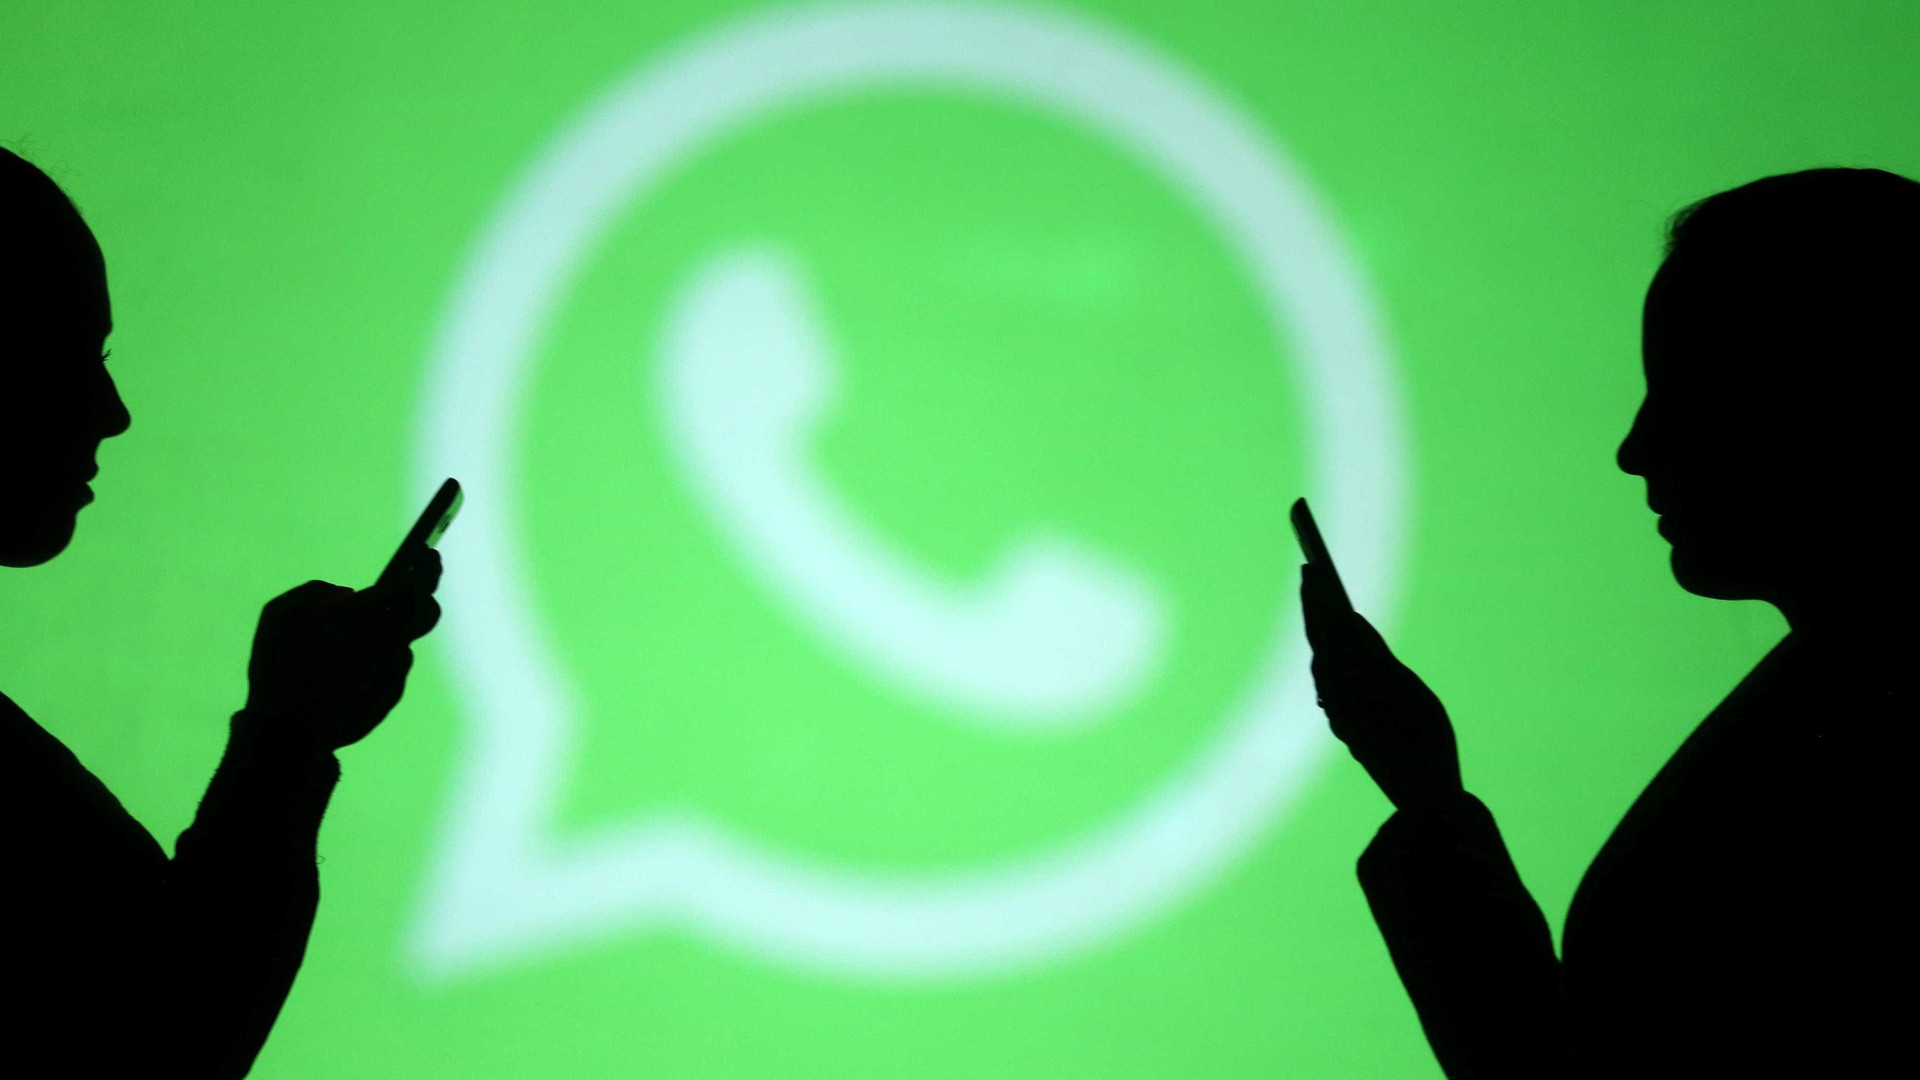 Whatsapp é principal fonte de informação do brasileiro, diz pesquisa